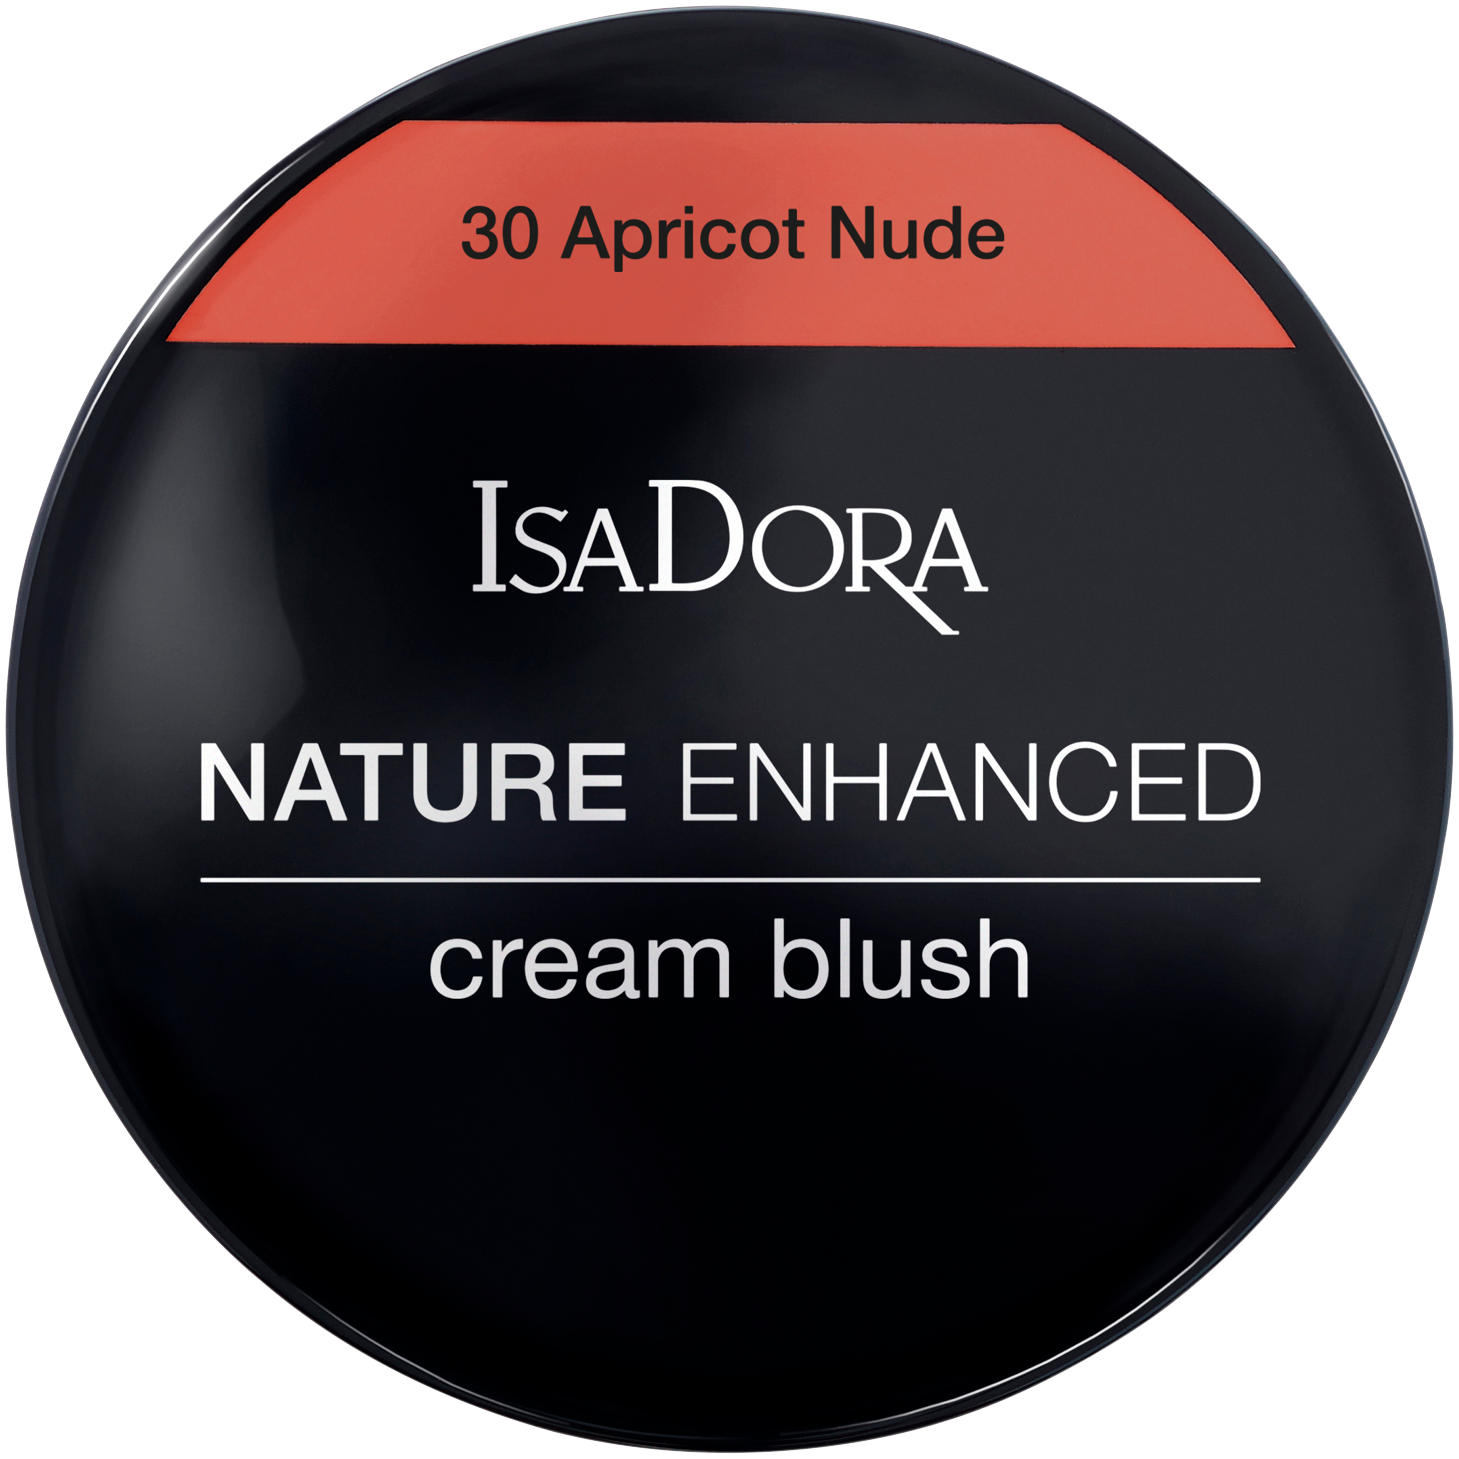 Кремовые румяна 30 абрикосовый нюд Isadora Nature Enhanced, 3 гр румяна кремовые isadora nature enhanced cream blush 3 мл